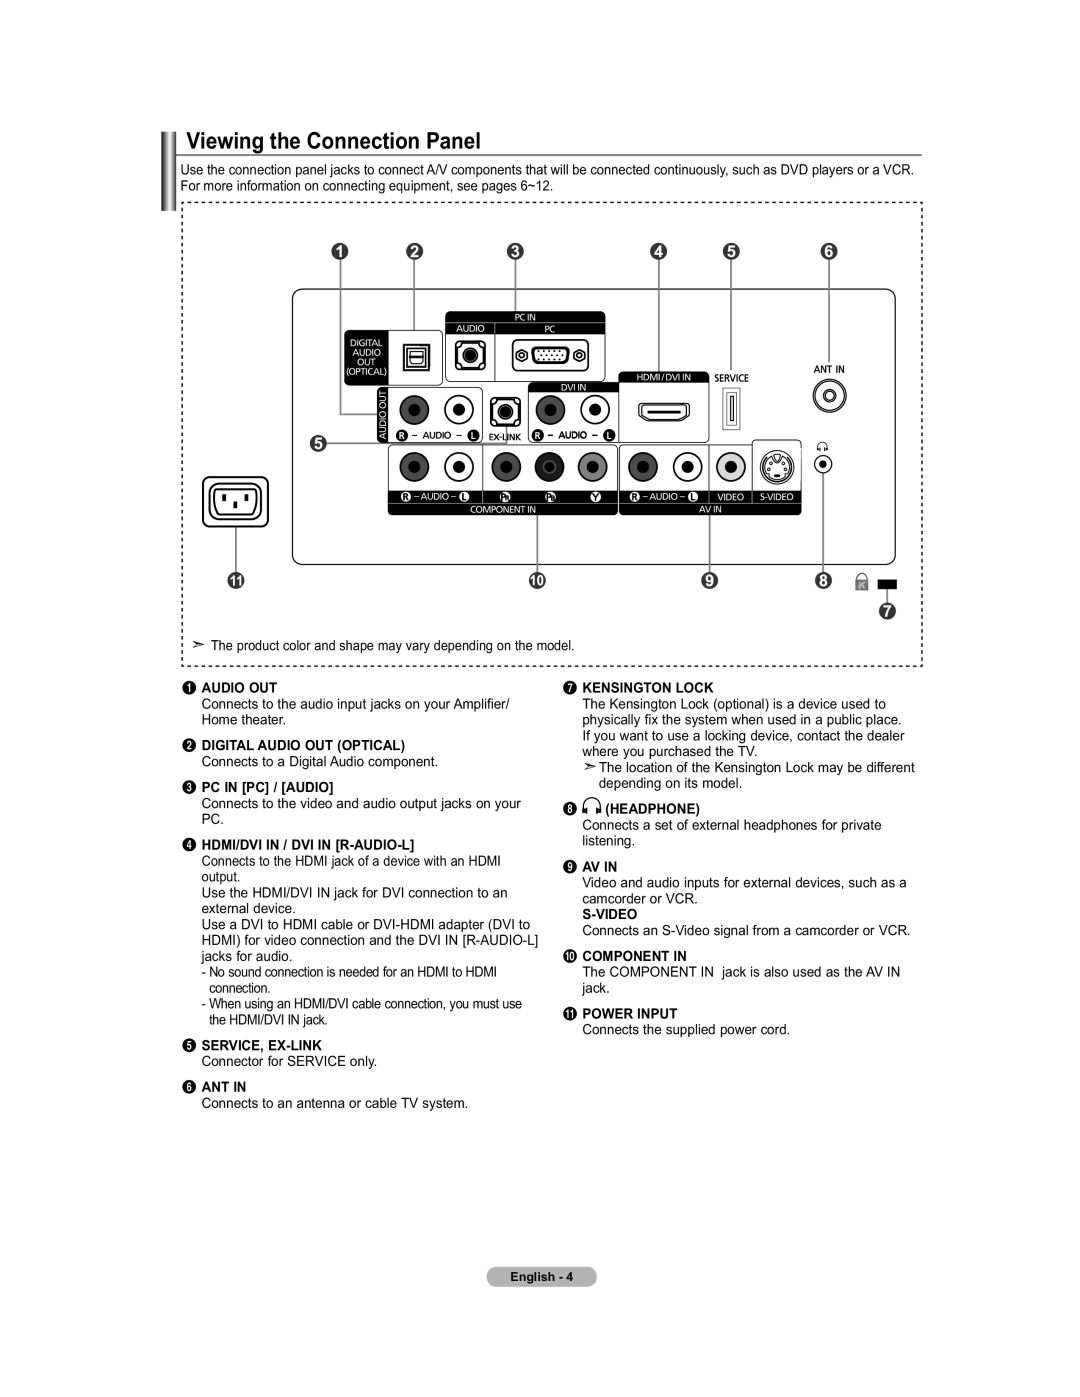 Samsung 451 Audio Out, Pc In Pc / Audio, Hdmi/Dvi In / Dvi In R-Audio-L, Ant In, Kensington Lock, Headphone, Av In 